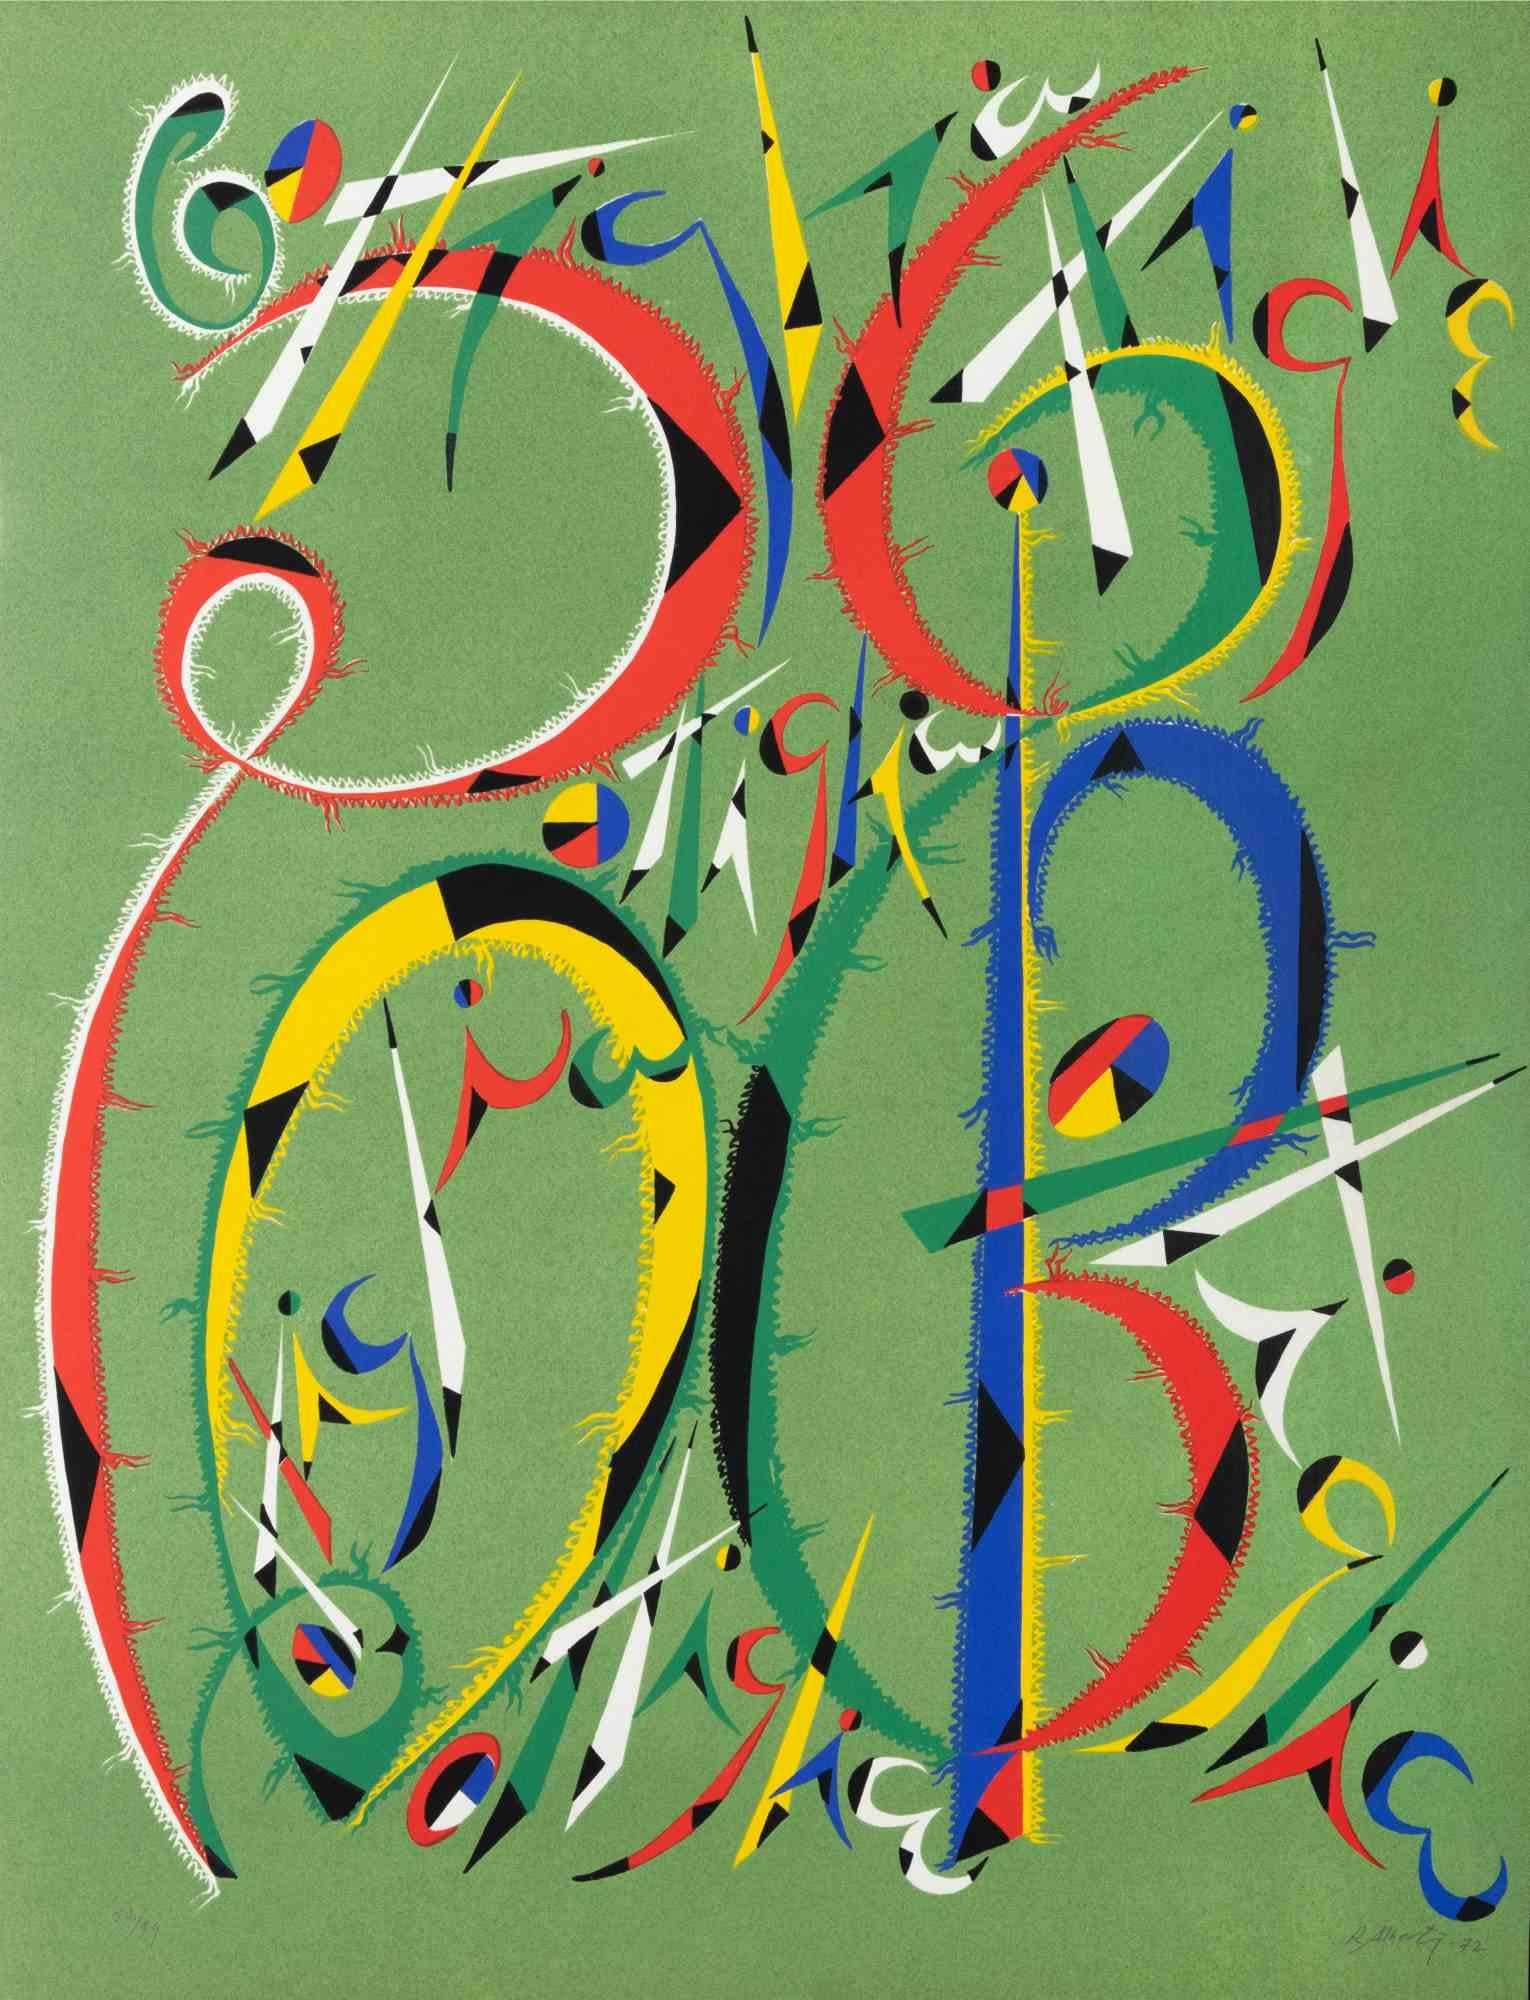 La lettre B de Rafael Alberti, de la série Alphabet, est une lithographie réalisée par Rafael Alberti en 1972.

Signé à la main et daté dans la marge inférieure droite. Numéroté en bas à gauche.

Édition de 52/99

L'œuvre d'art représente la lettre